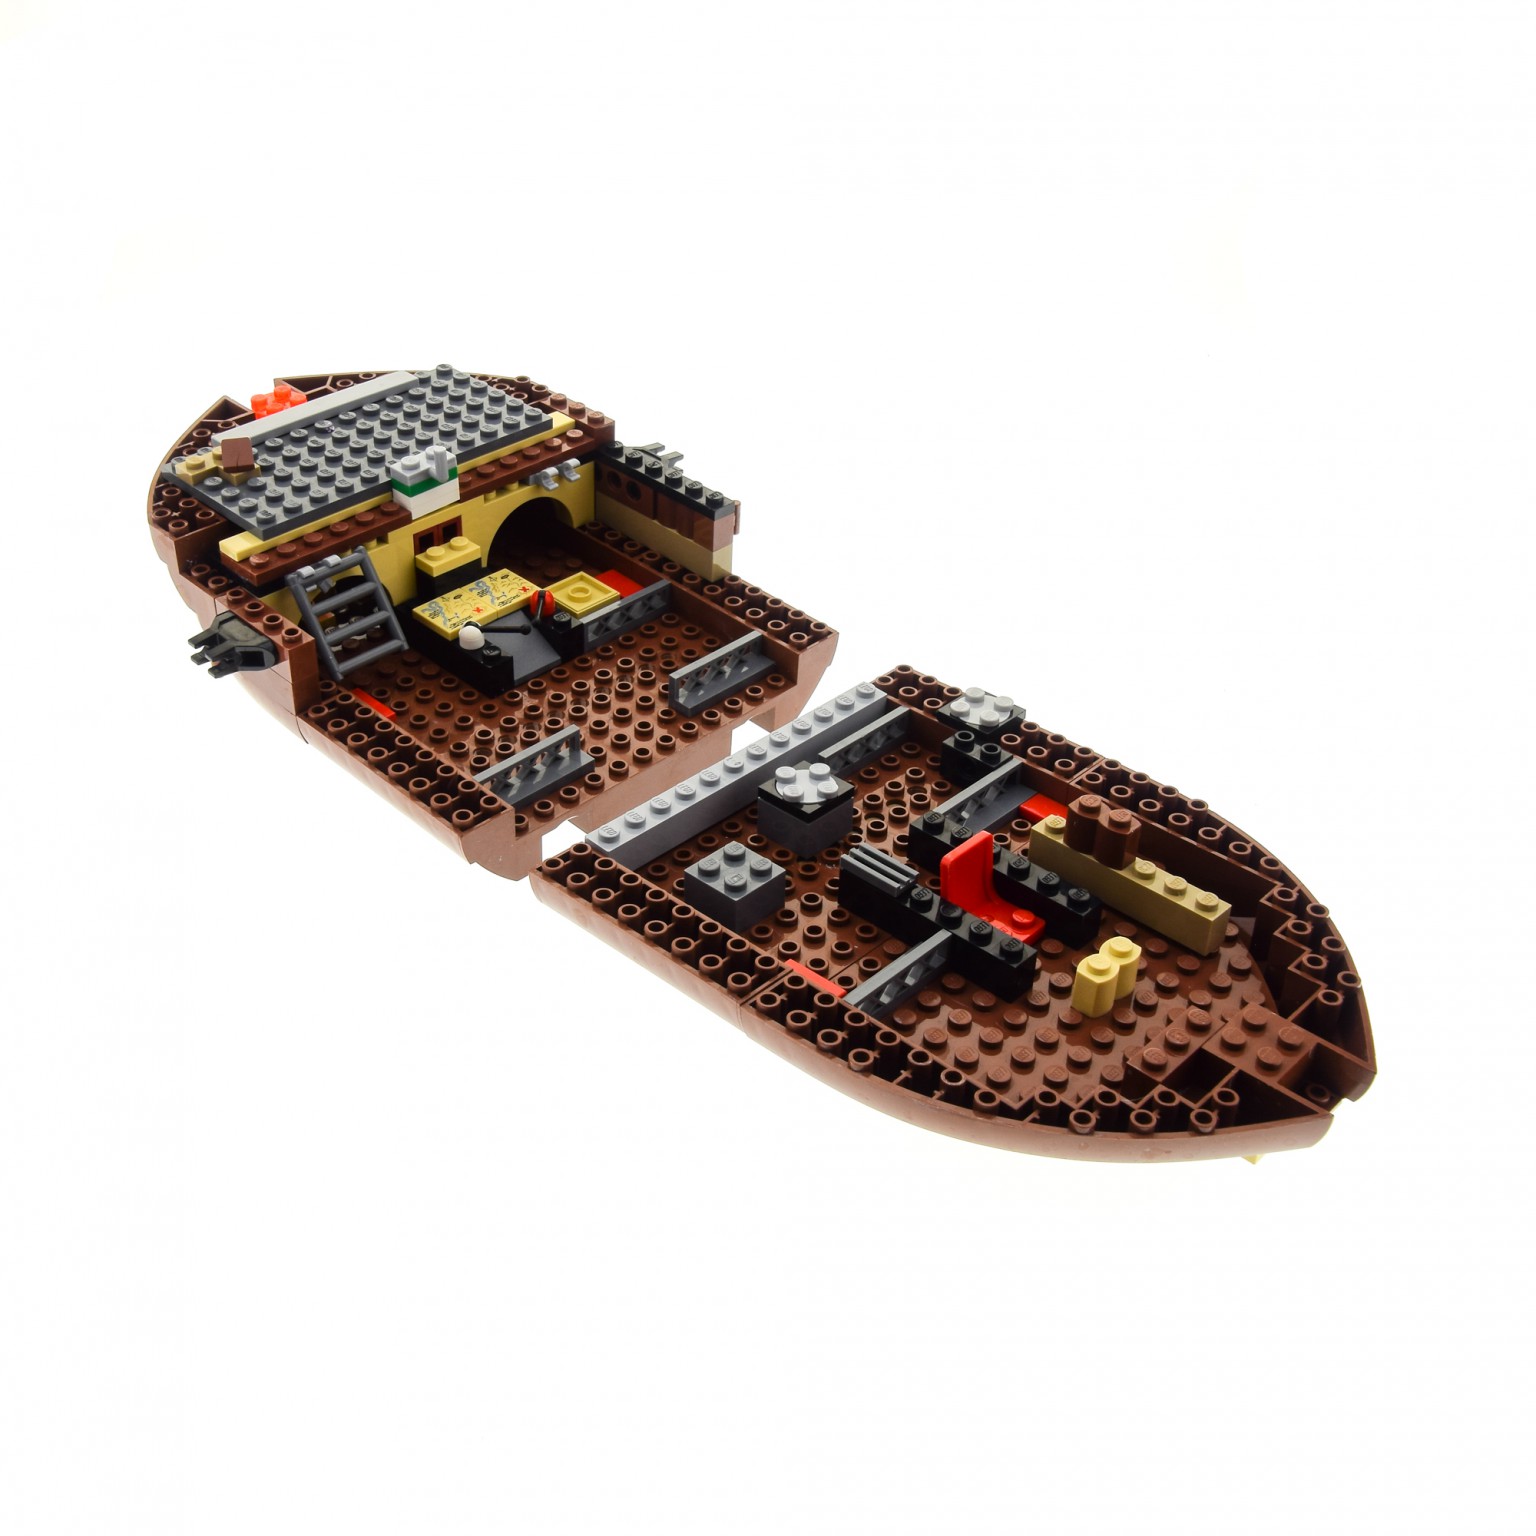 Boot aus 6243 Brickbeard's Bounty Meerjungfrau Neu Lego Piraten Figuren Set 